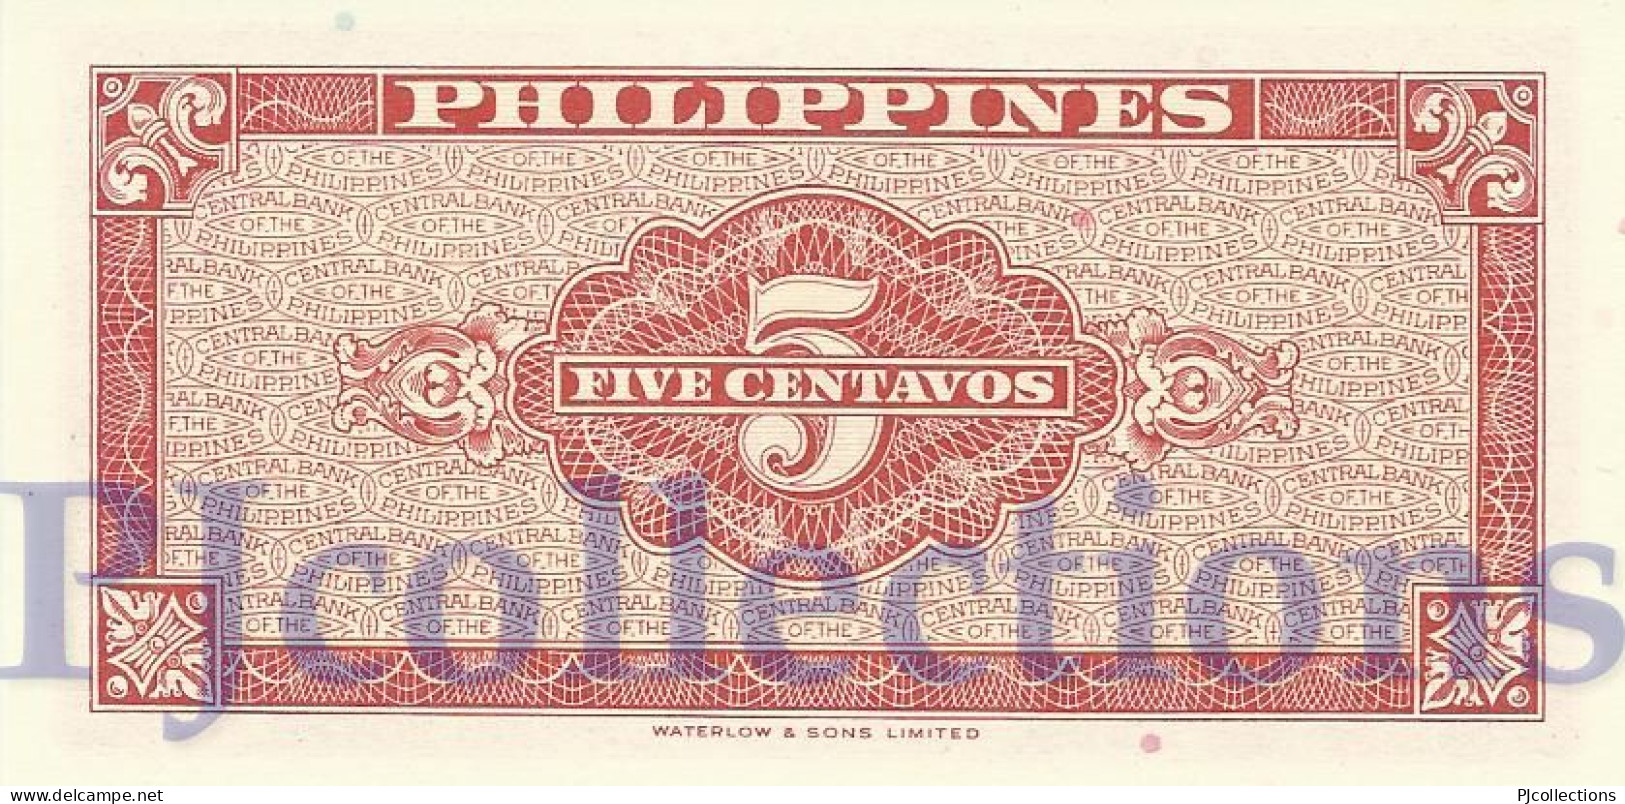 PHILIPPINES 5 CENTAVOS 1949 PICK 126a UNC - Philippinen